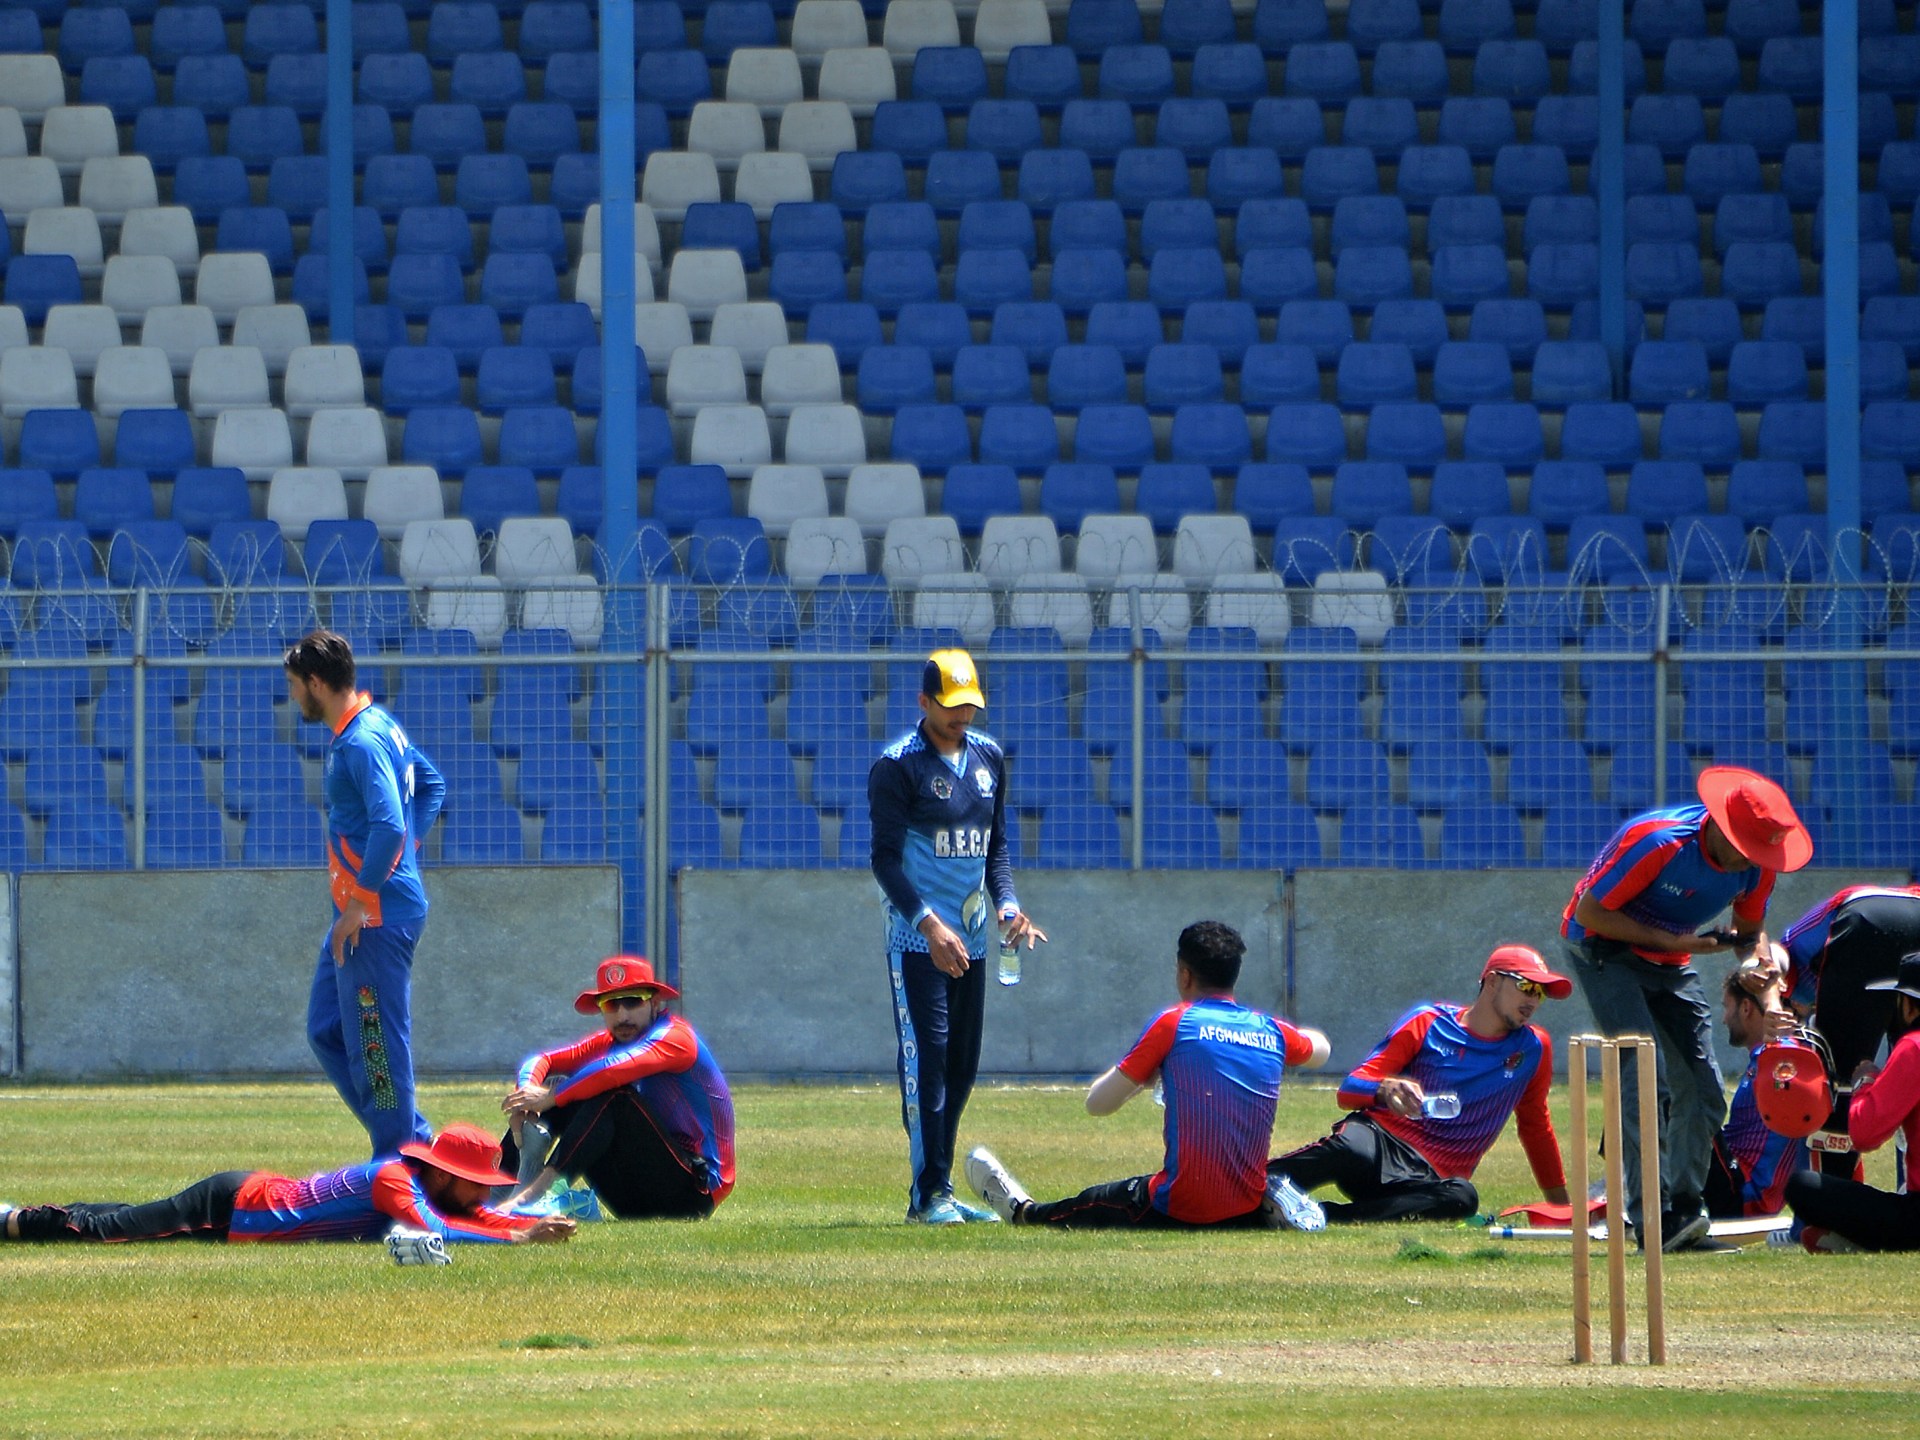 Taliban sacks Afghan Cricket Board CEO Hamid Shinwari | Taliban ...